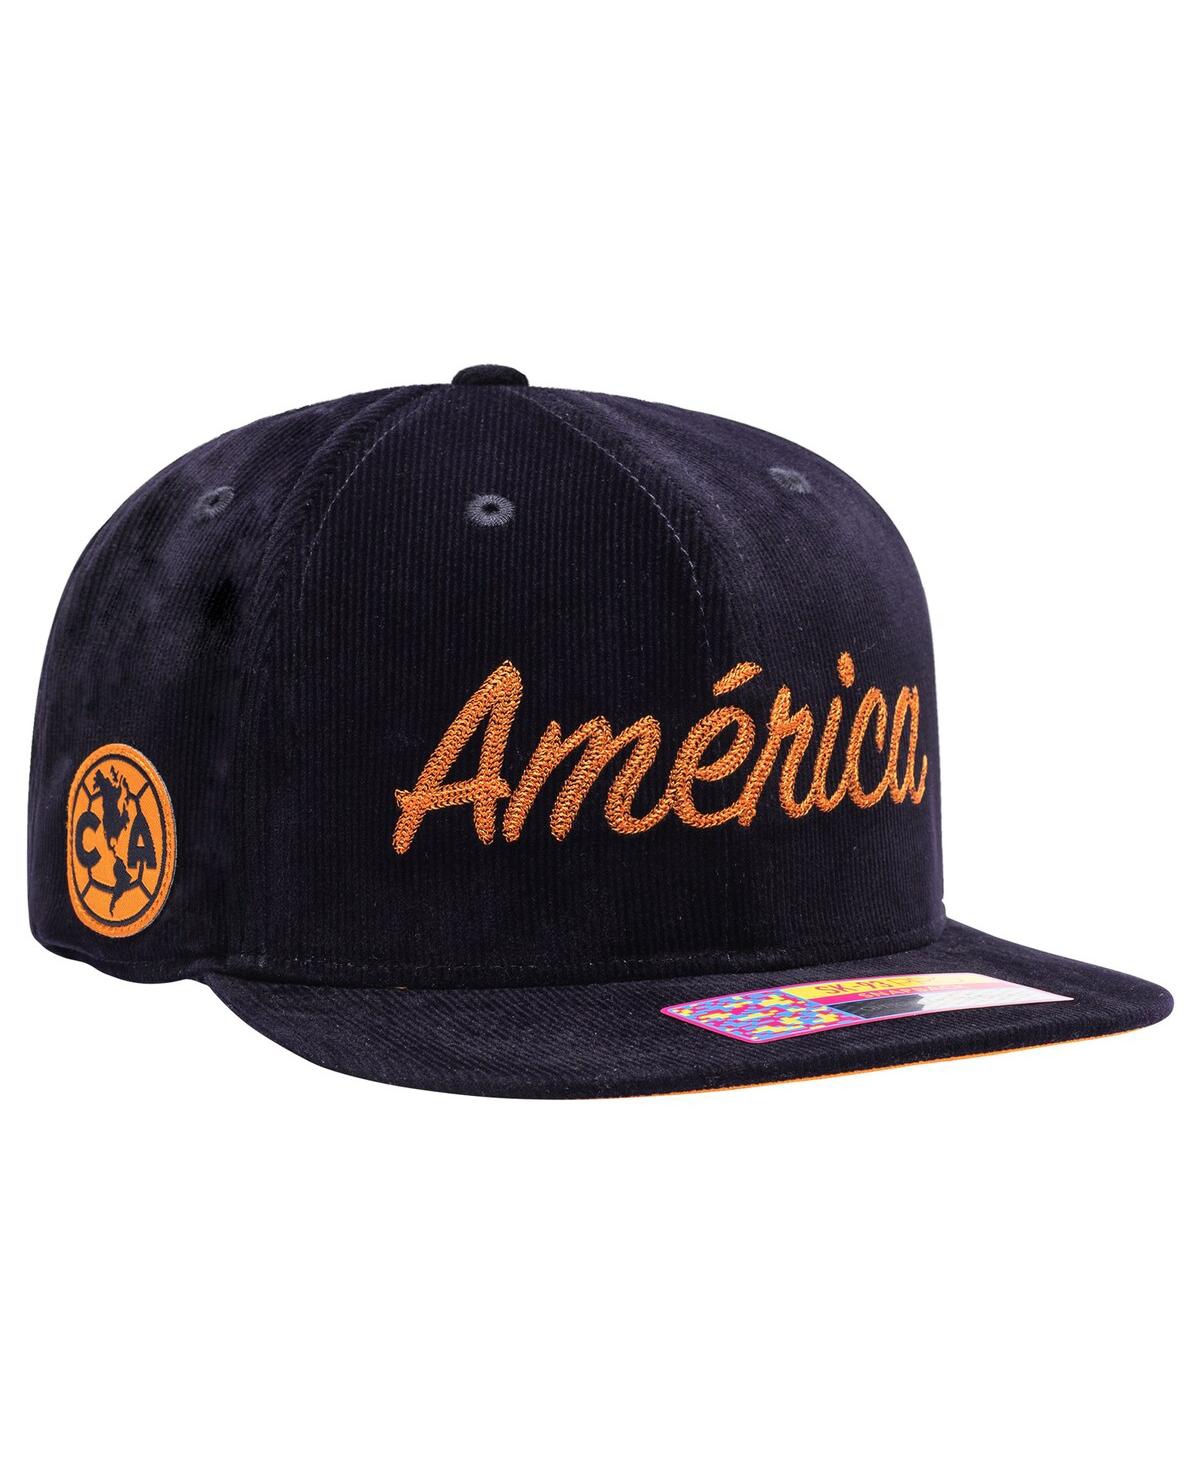 Men's Navy Club America Plush Snapback Hat - Navy